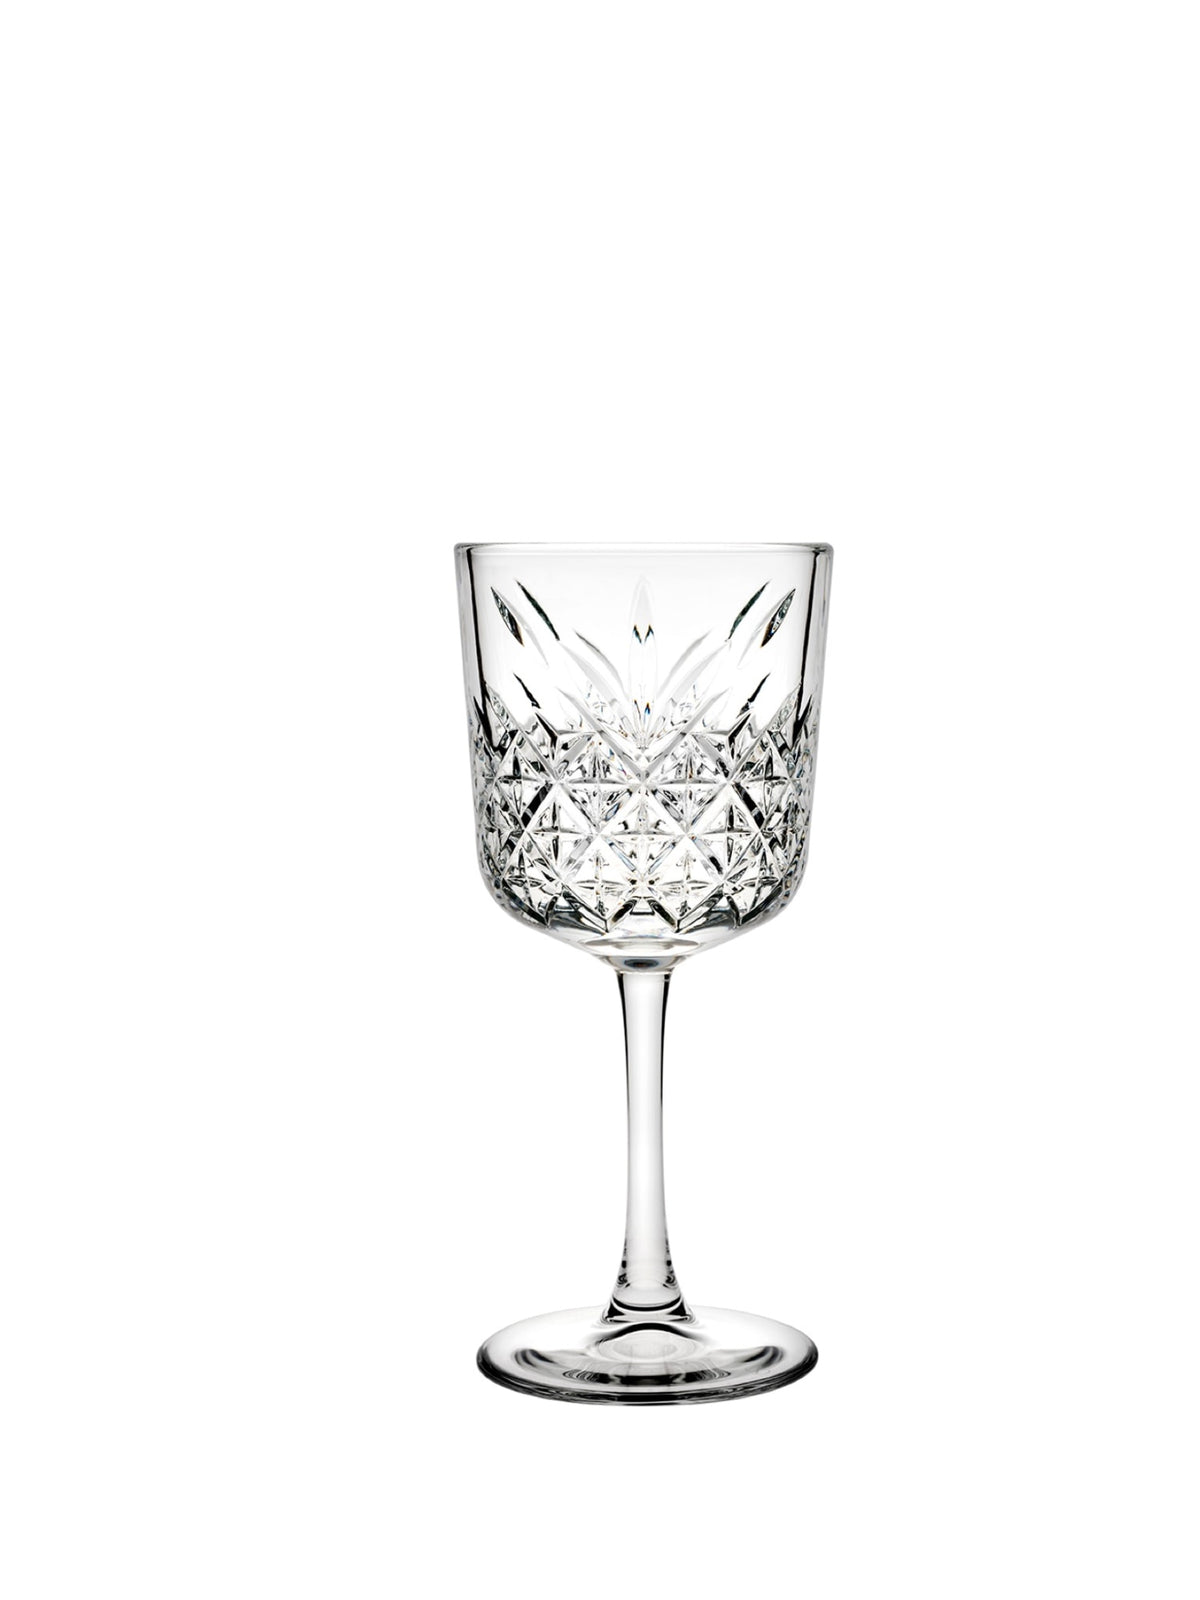 Pasabahce Timeless Weinglas 33,0 cl - ein elegantes und zeitloses Glas für Ihre Lieblingsweine.